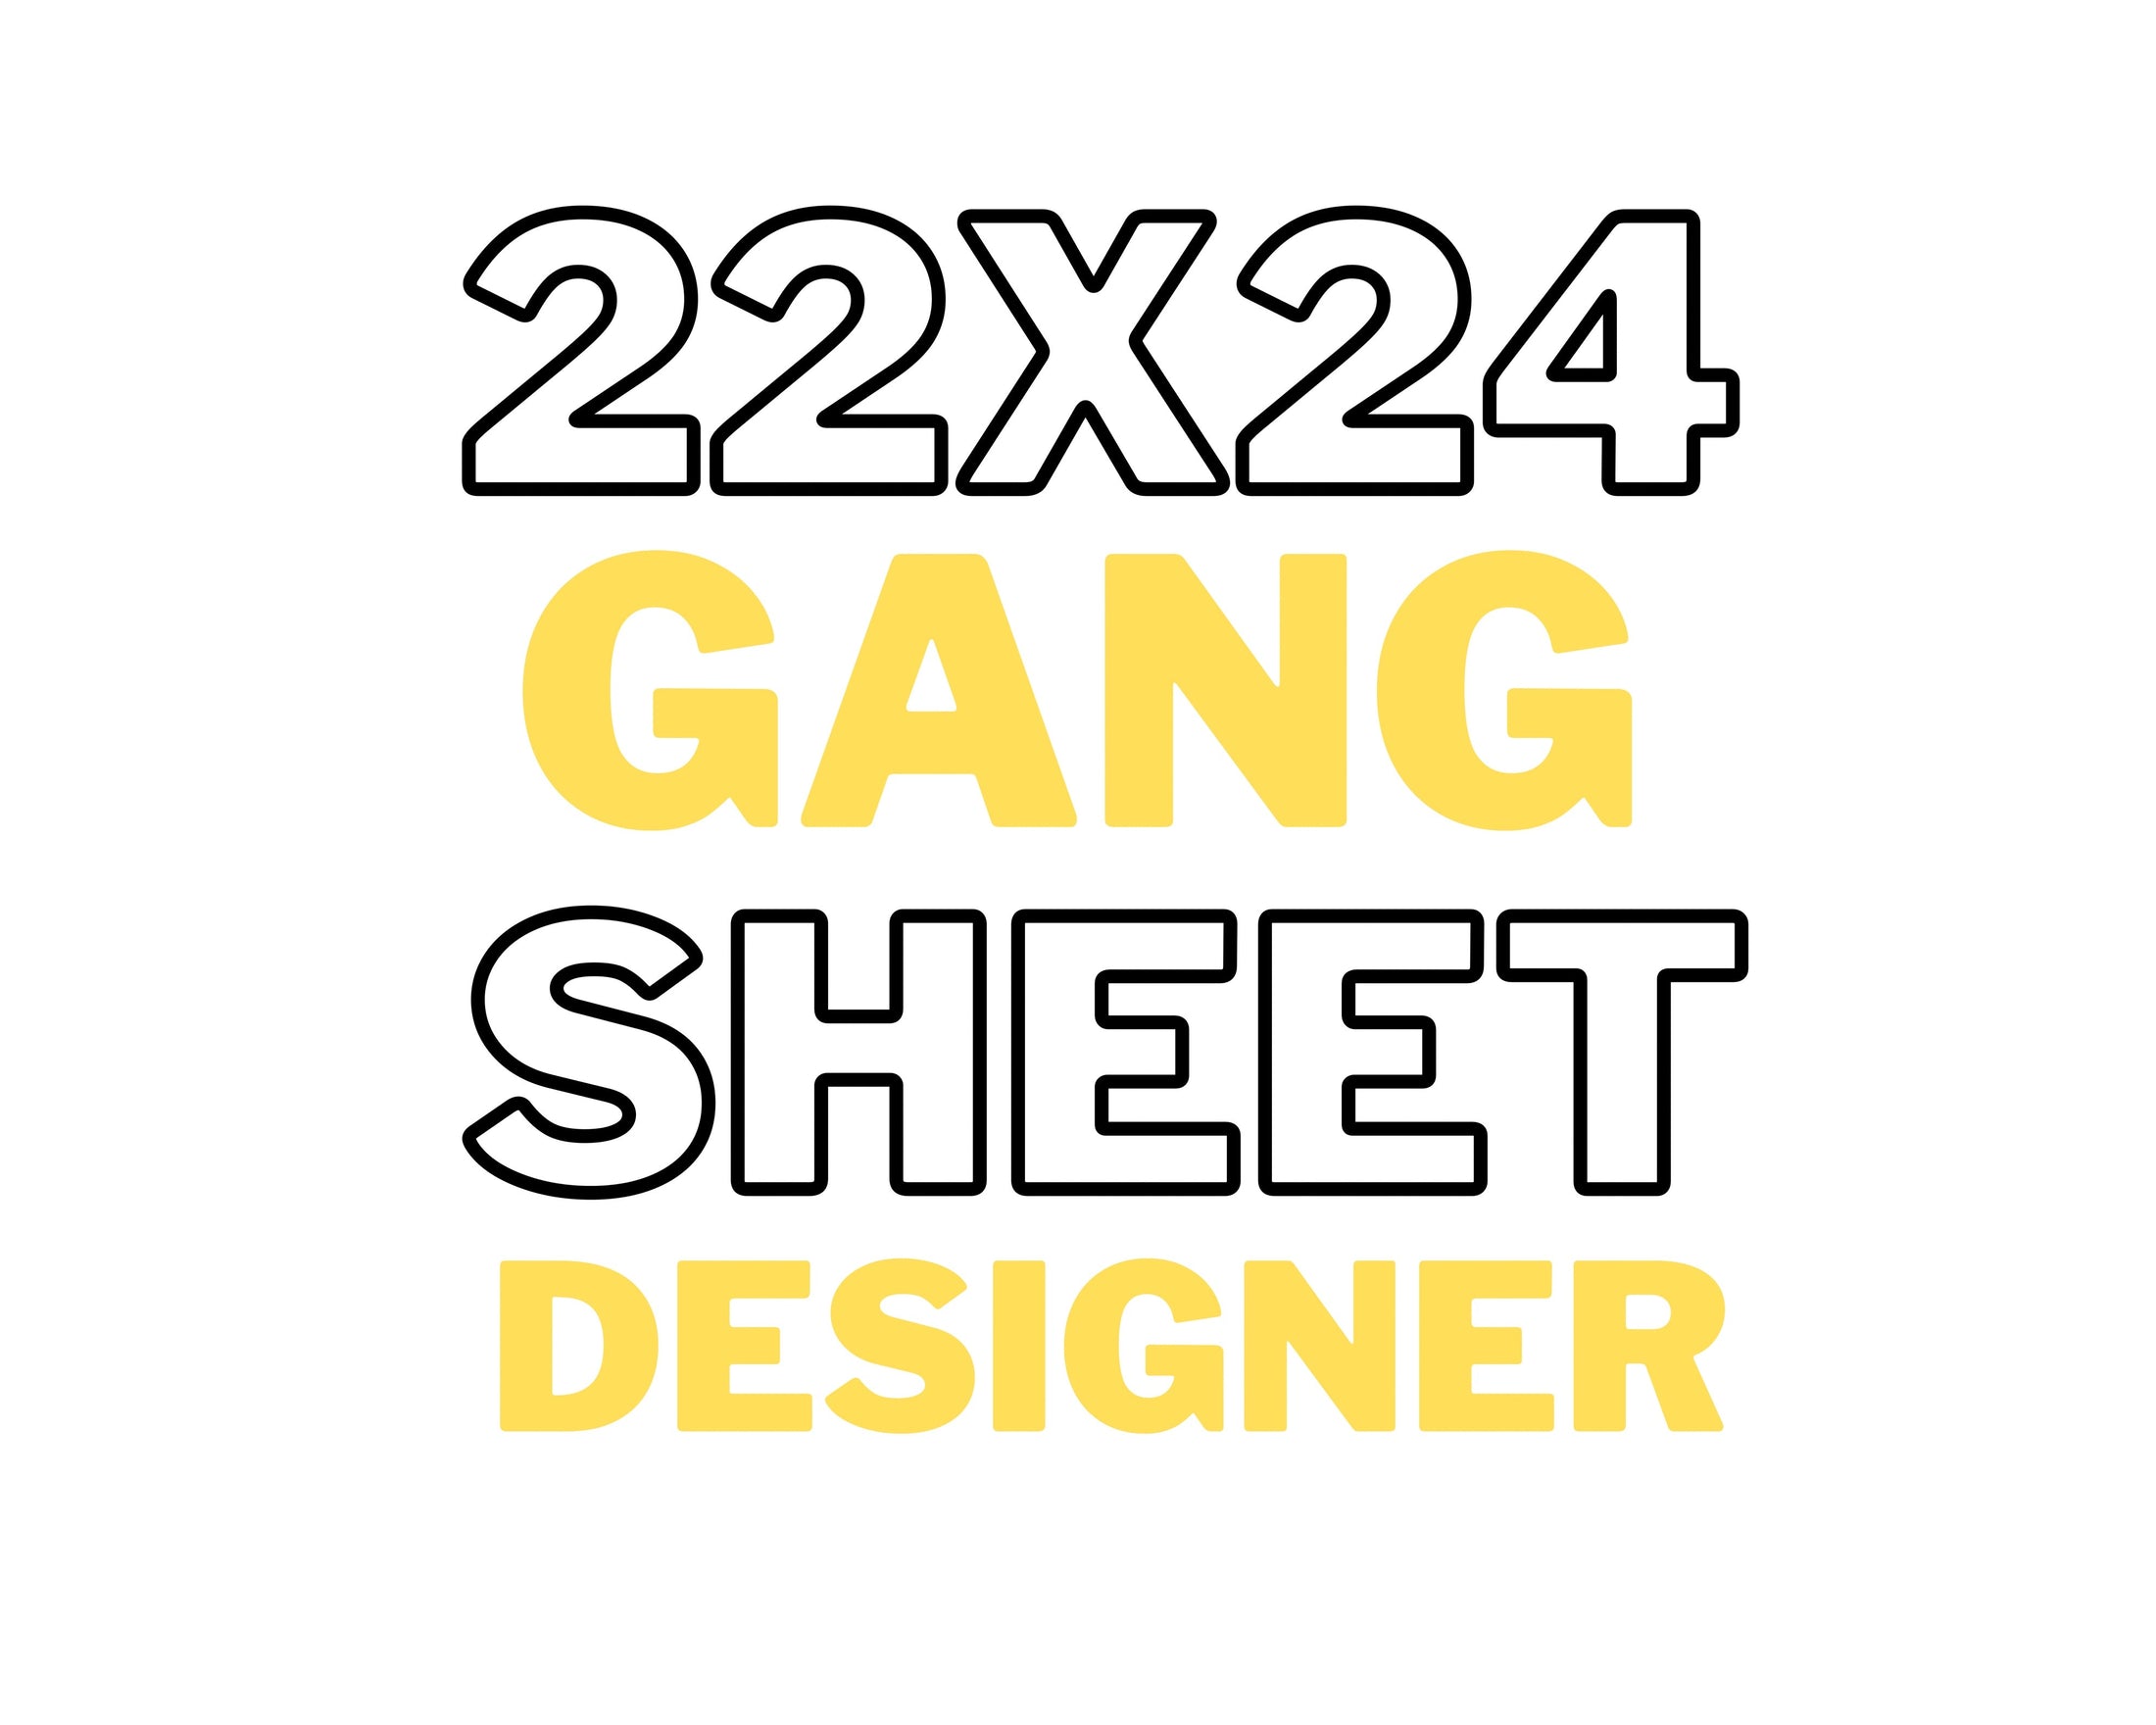 GANG SHEET 22x24 Printing tee and shirts 